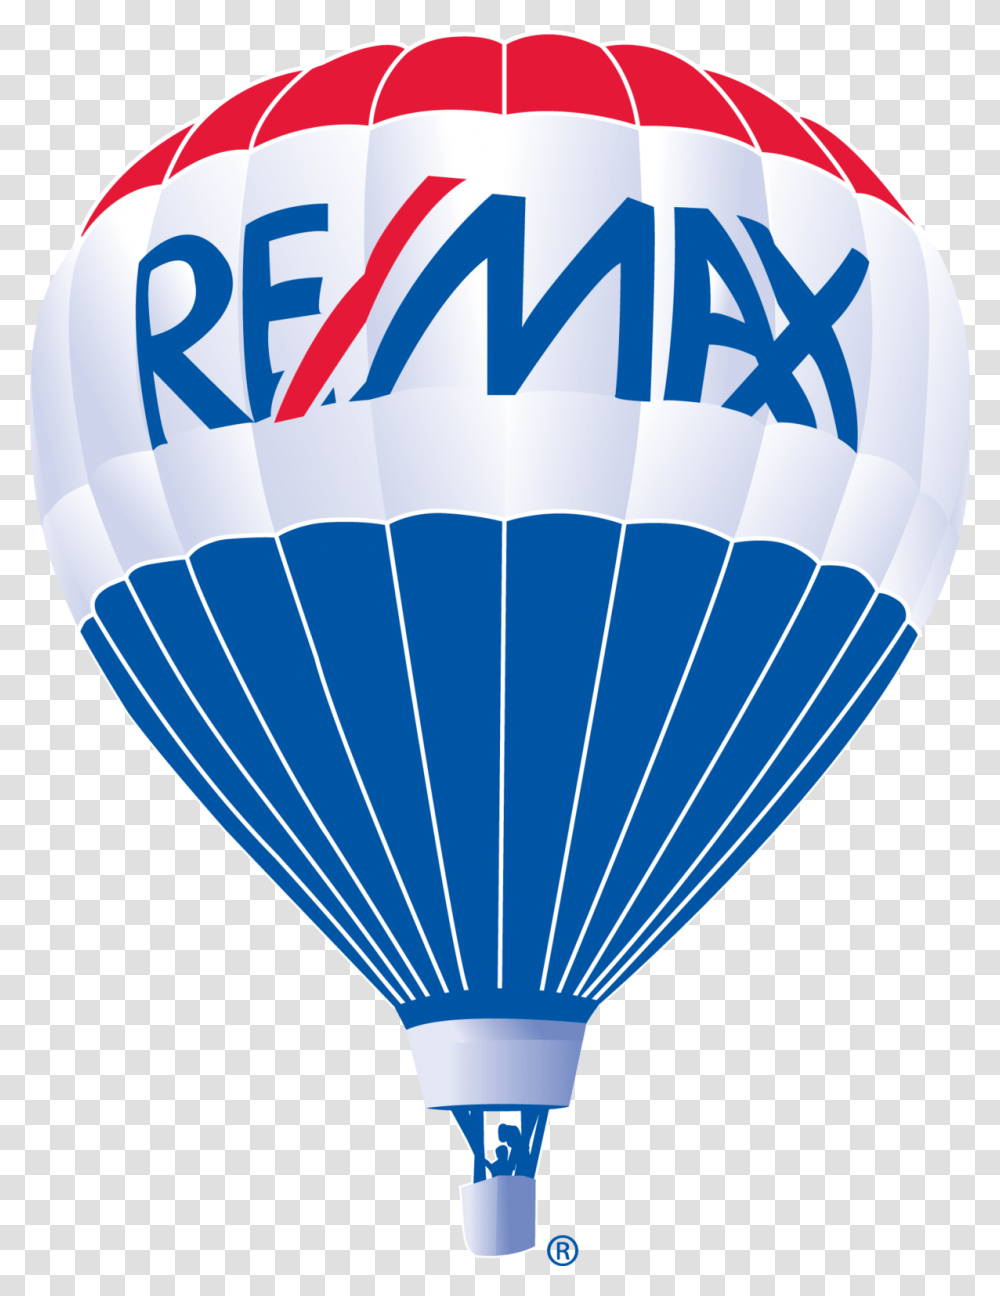 Remax Balloon Re Max Balloon Logo, Hot Air Balloon, Aircraft, Vehicle, Transportation Transparent Png